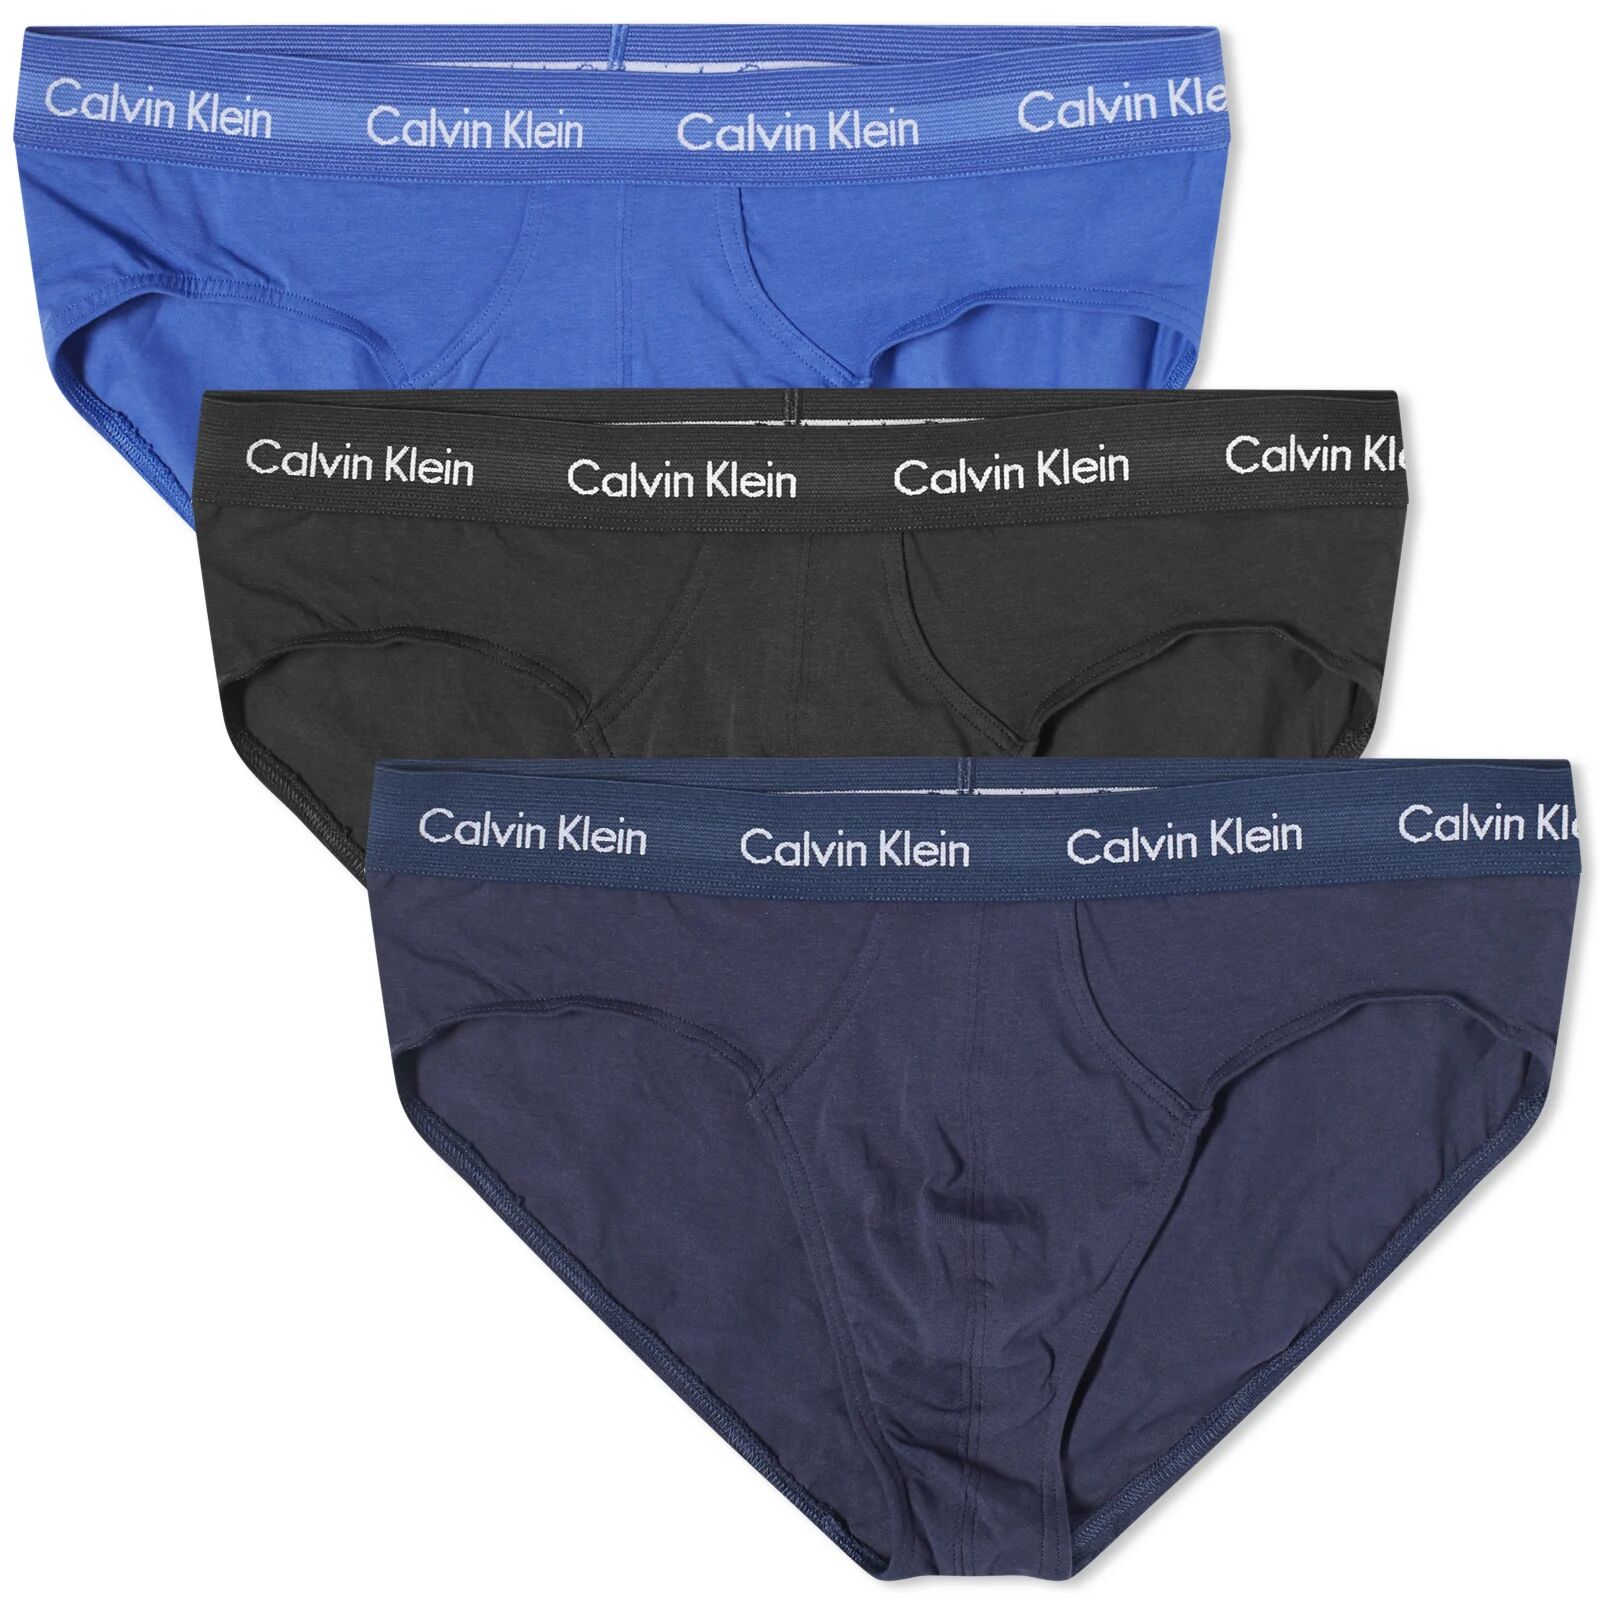 Calvin Klein Men's CK Underwear Hip Brief - 3 Pack in Black/Blue, Size Small